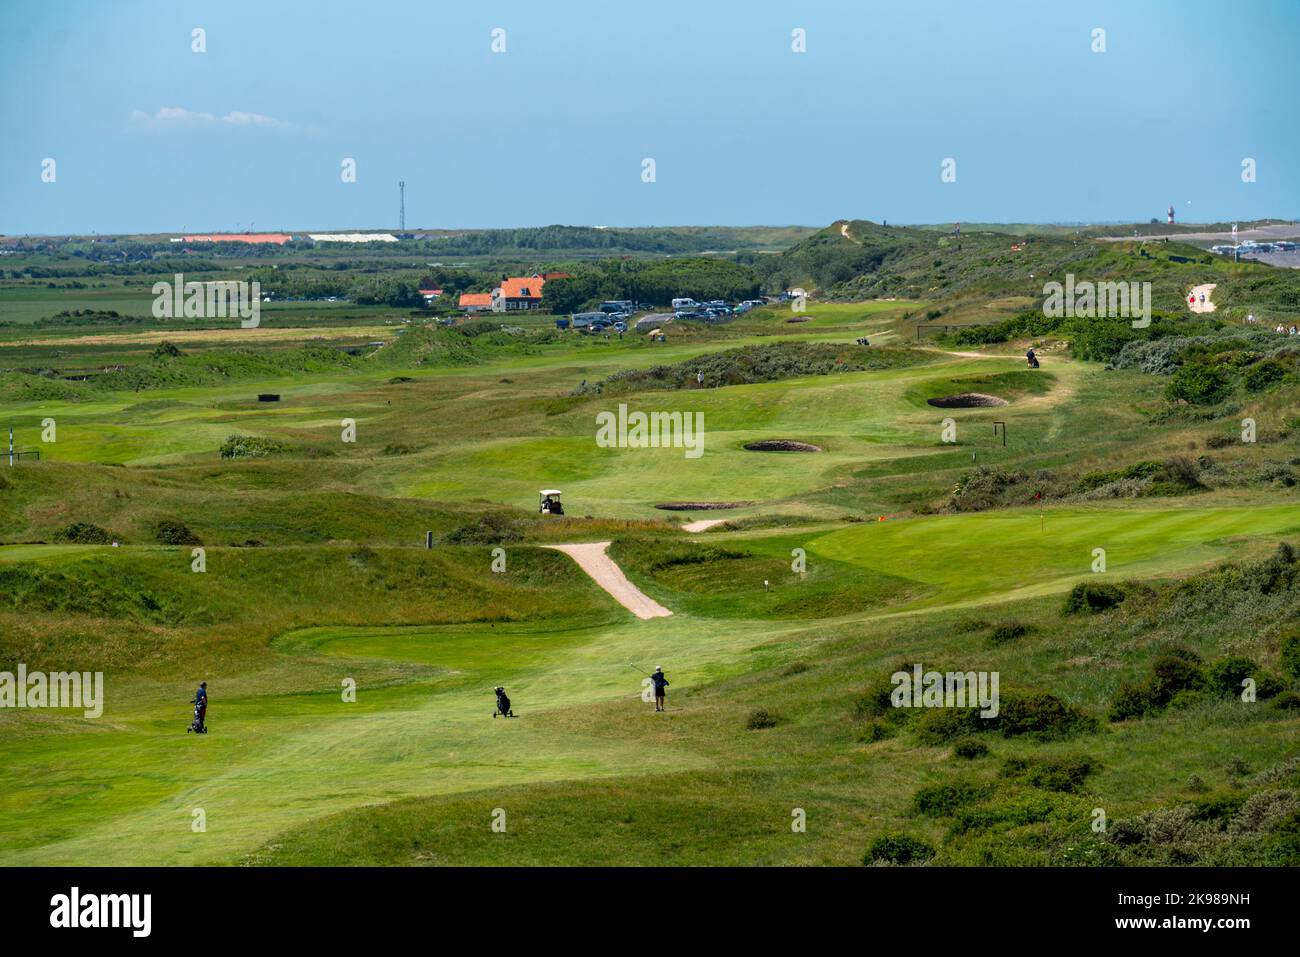 Parcours de golf dans les dunes, club de golf de Domburg, Domburg dans Zeeland, station balnéaire, côte, Pays-Bas Banque D'Images